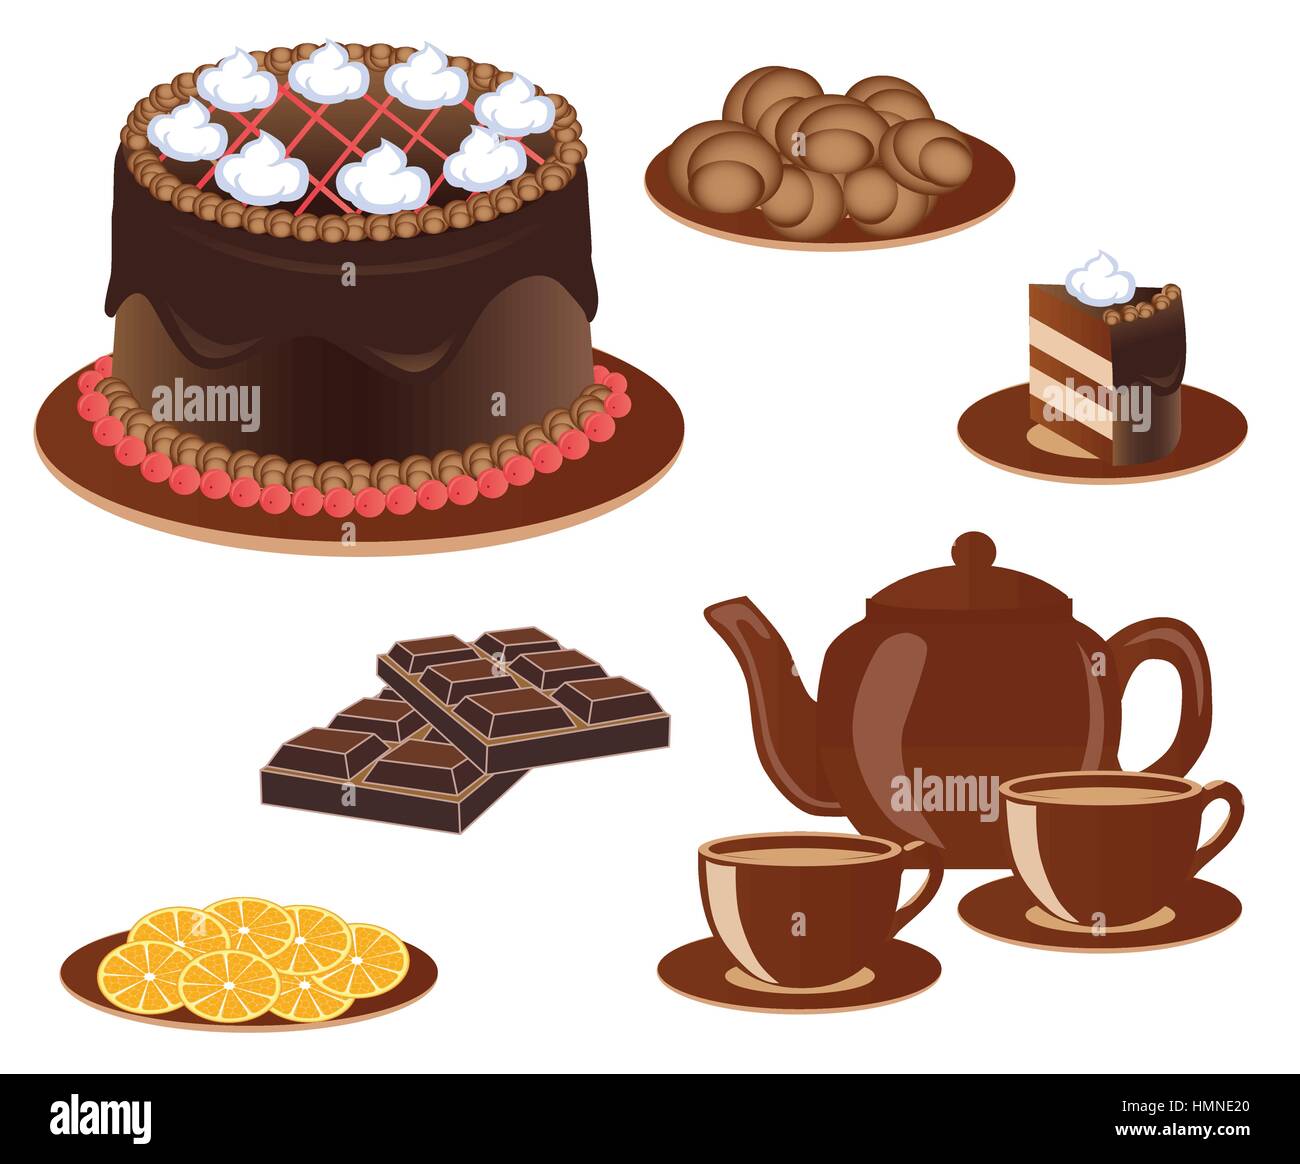 Produits pour le thé - cake, chocolat, biscuits, citron Illustration de Vecteur